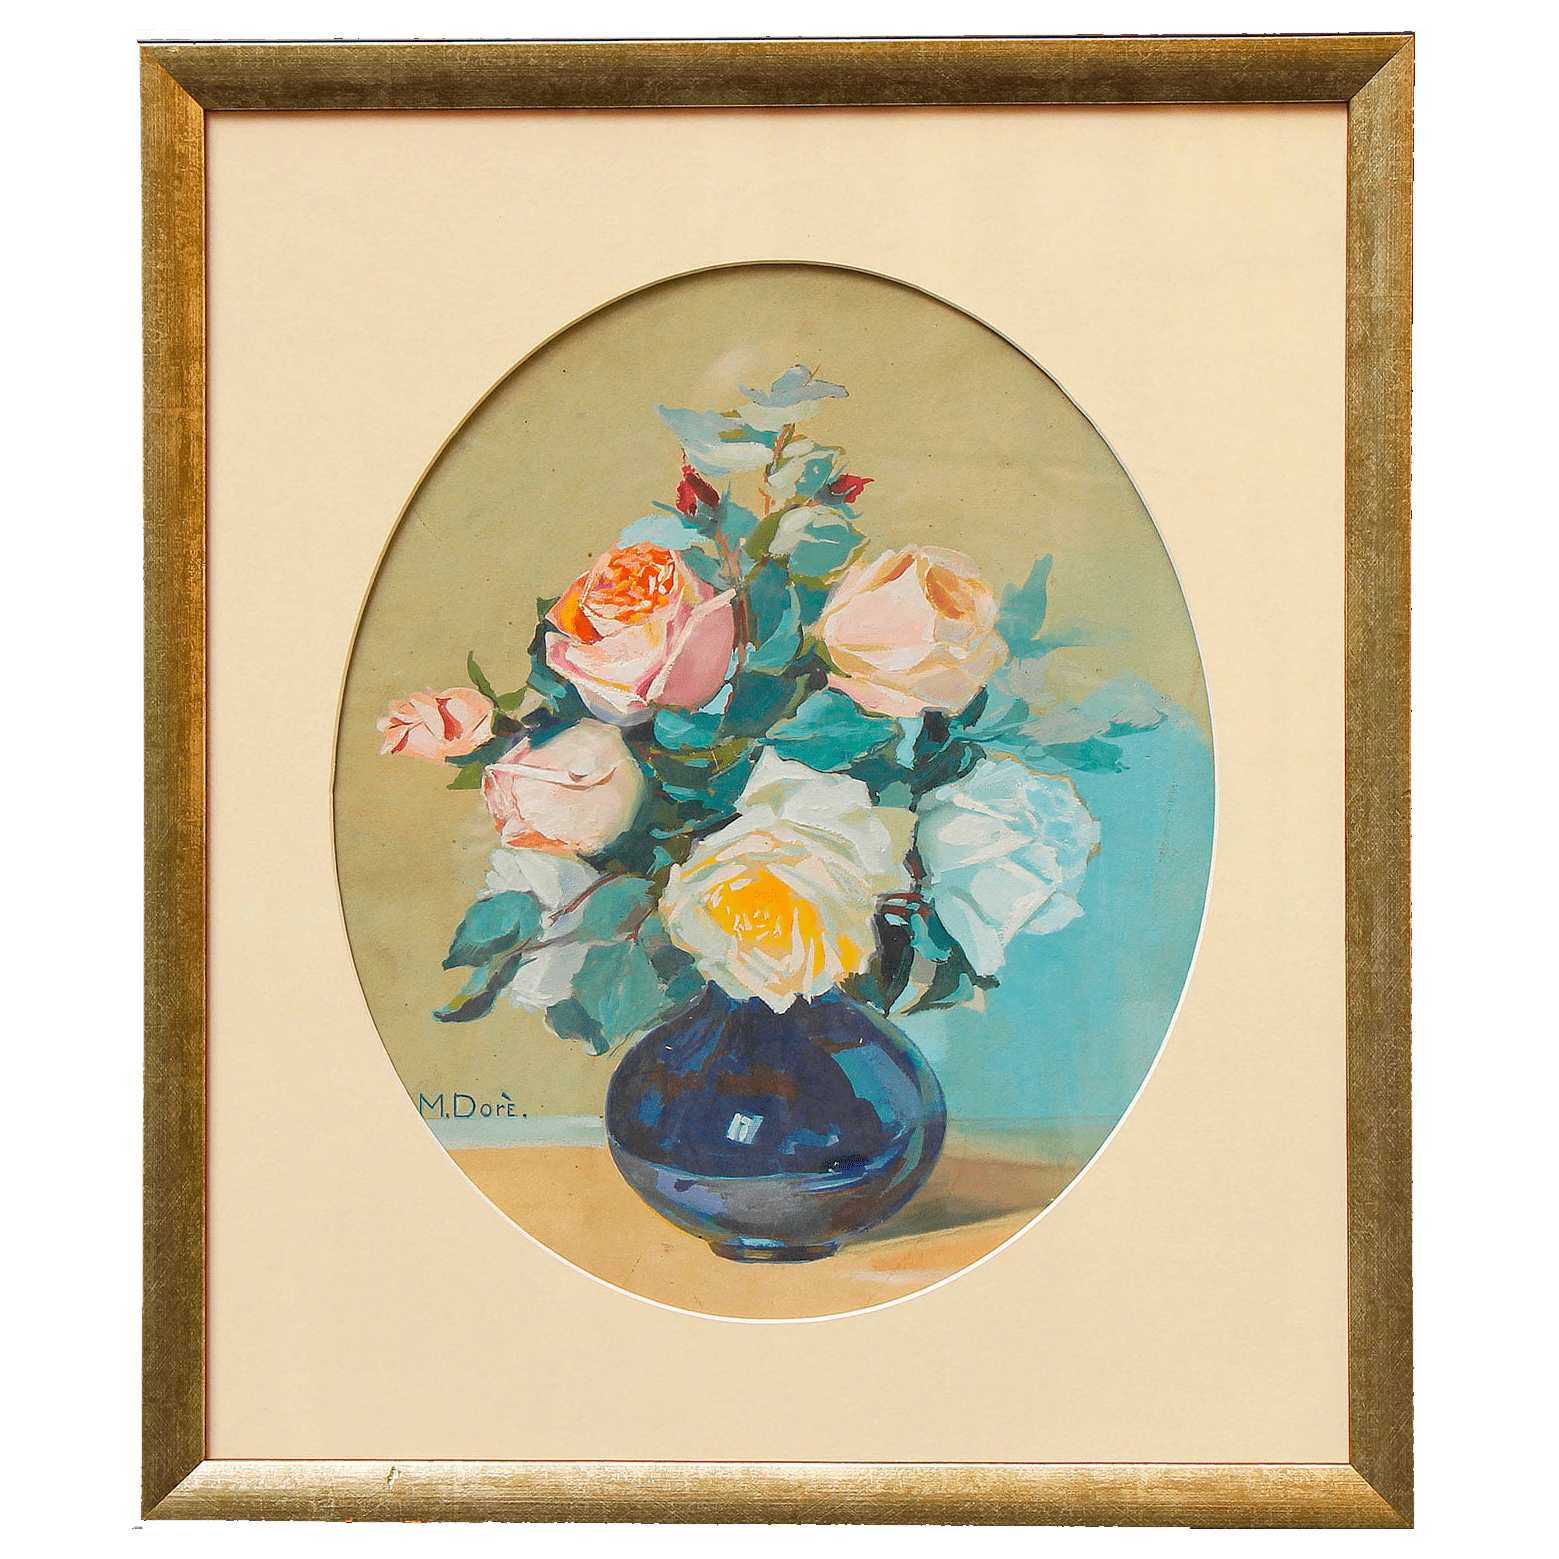 Картина «Букет Роз» художника M. Dore нач. 20 в., бумага, акварель